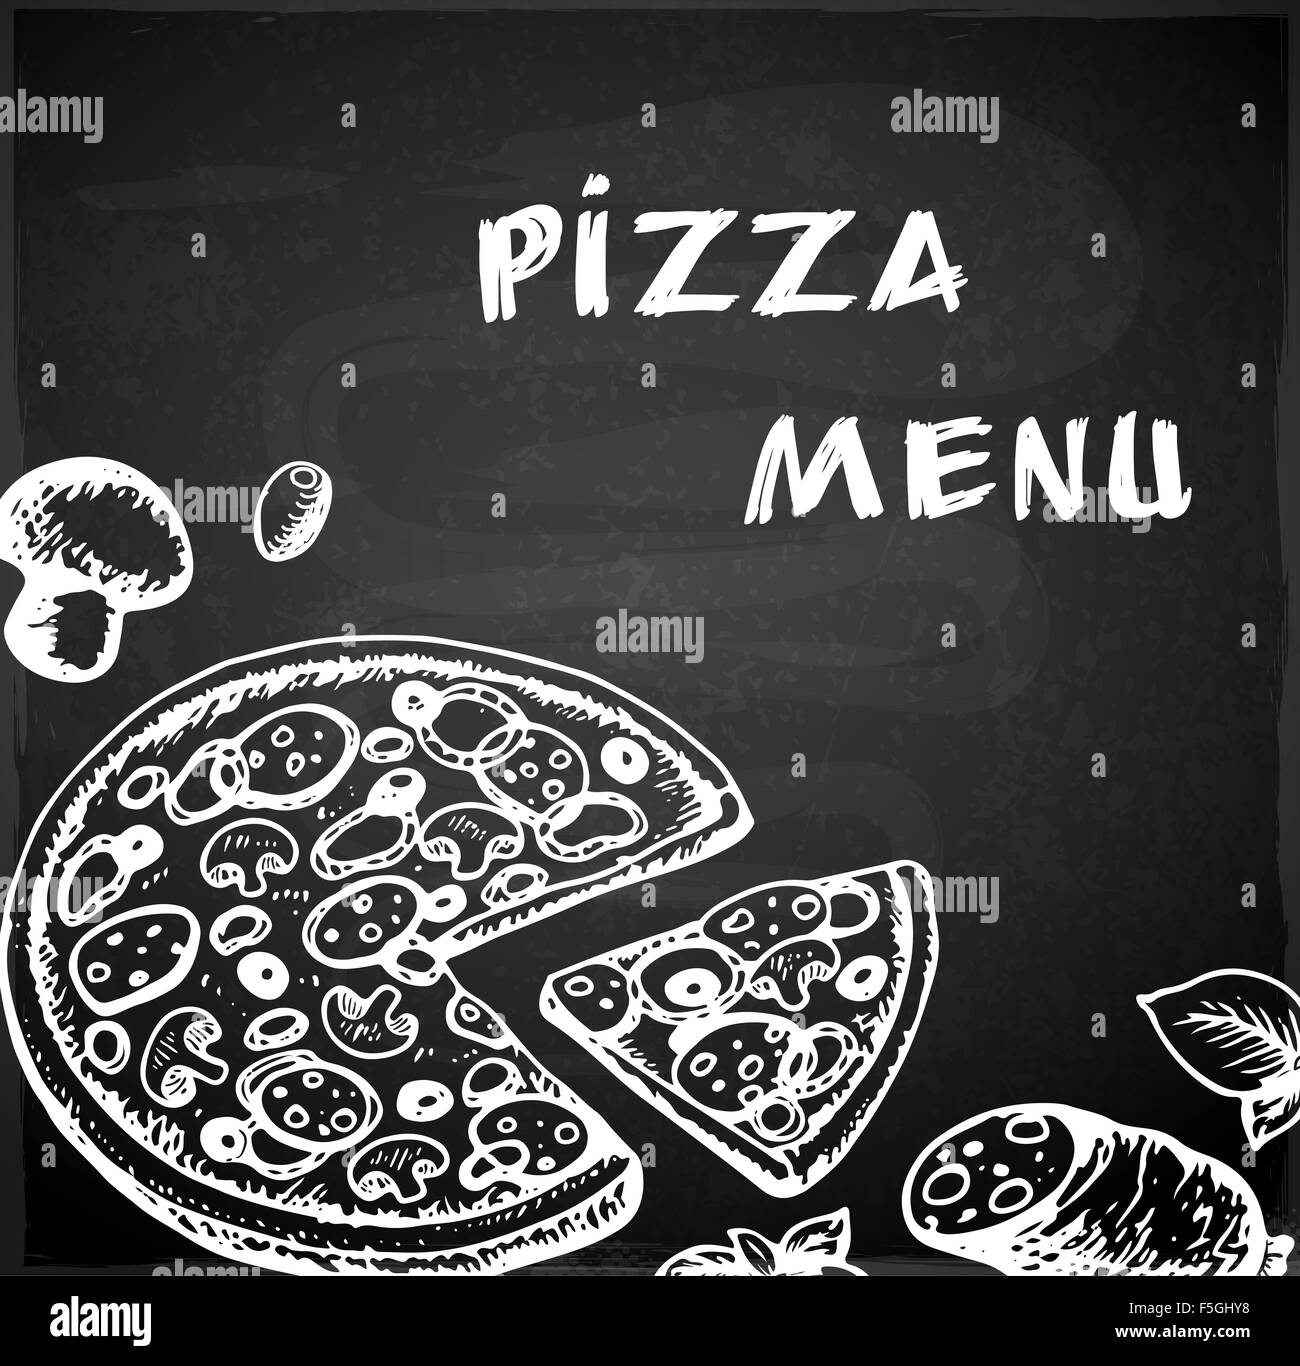 Menu della pizza immagini e fotografie stock ad alta risoluzione - Alamy